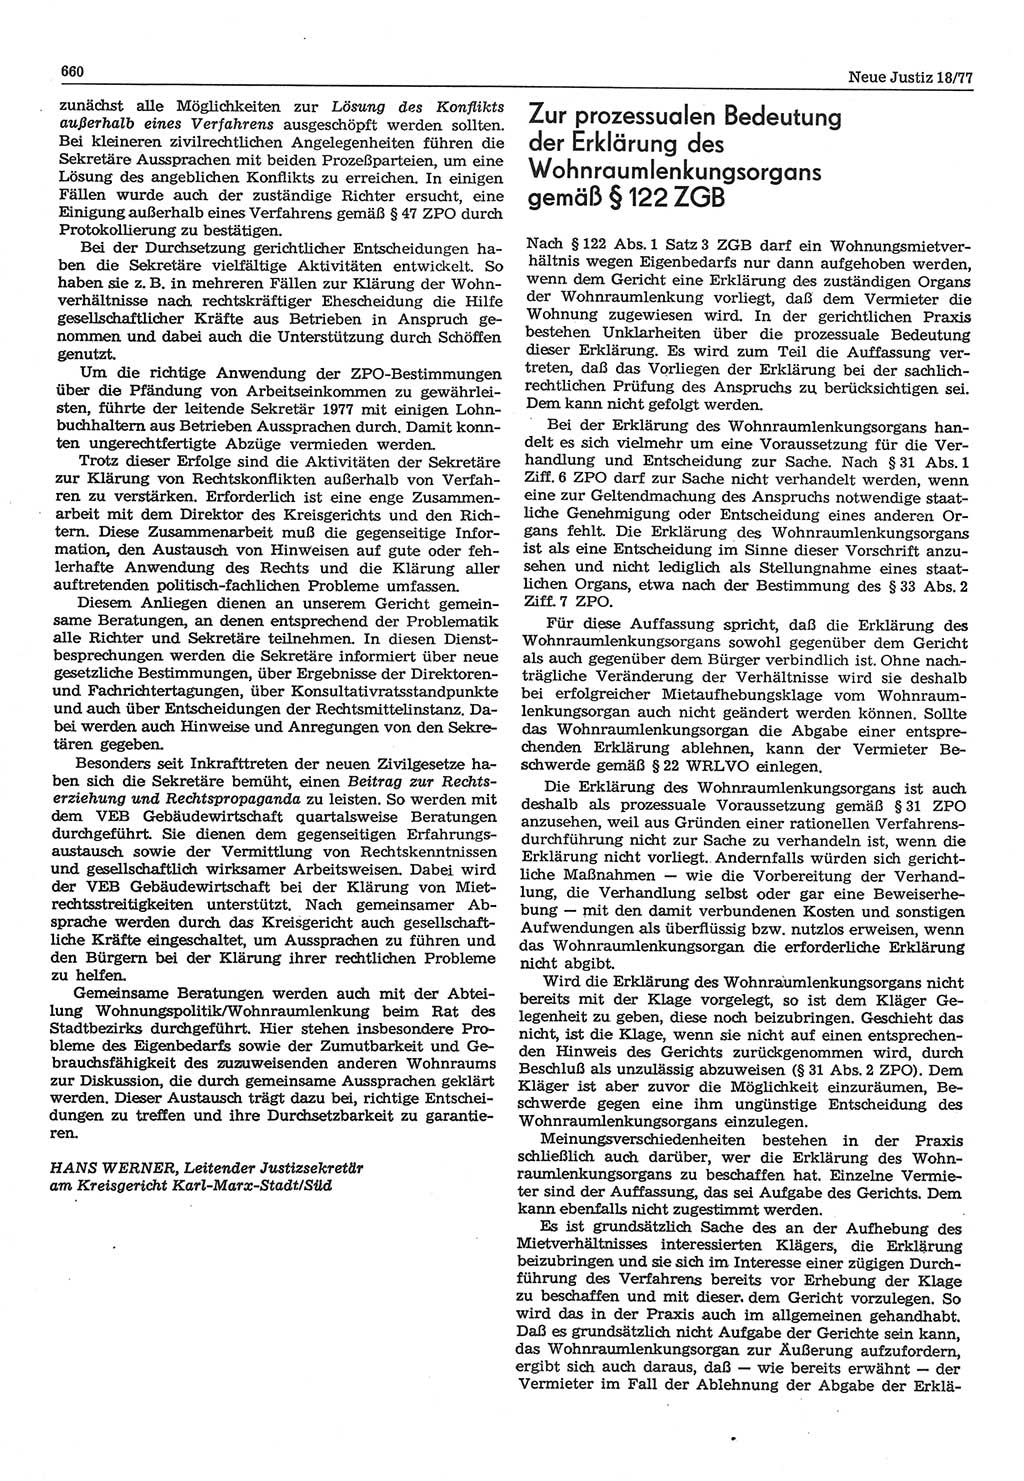 Neue Justiz (NJ), Zeitschrift für Recht und Rechtswissenschaft-Zeitschrift, sozialistisches Recht und Gesetzlichkeit, 31. Jahrgang 1977, Seite 660 (NJ DDR 1977, S. 660)